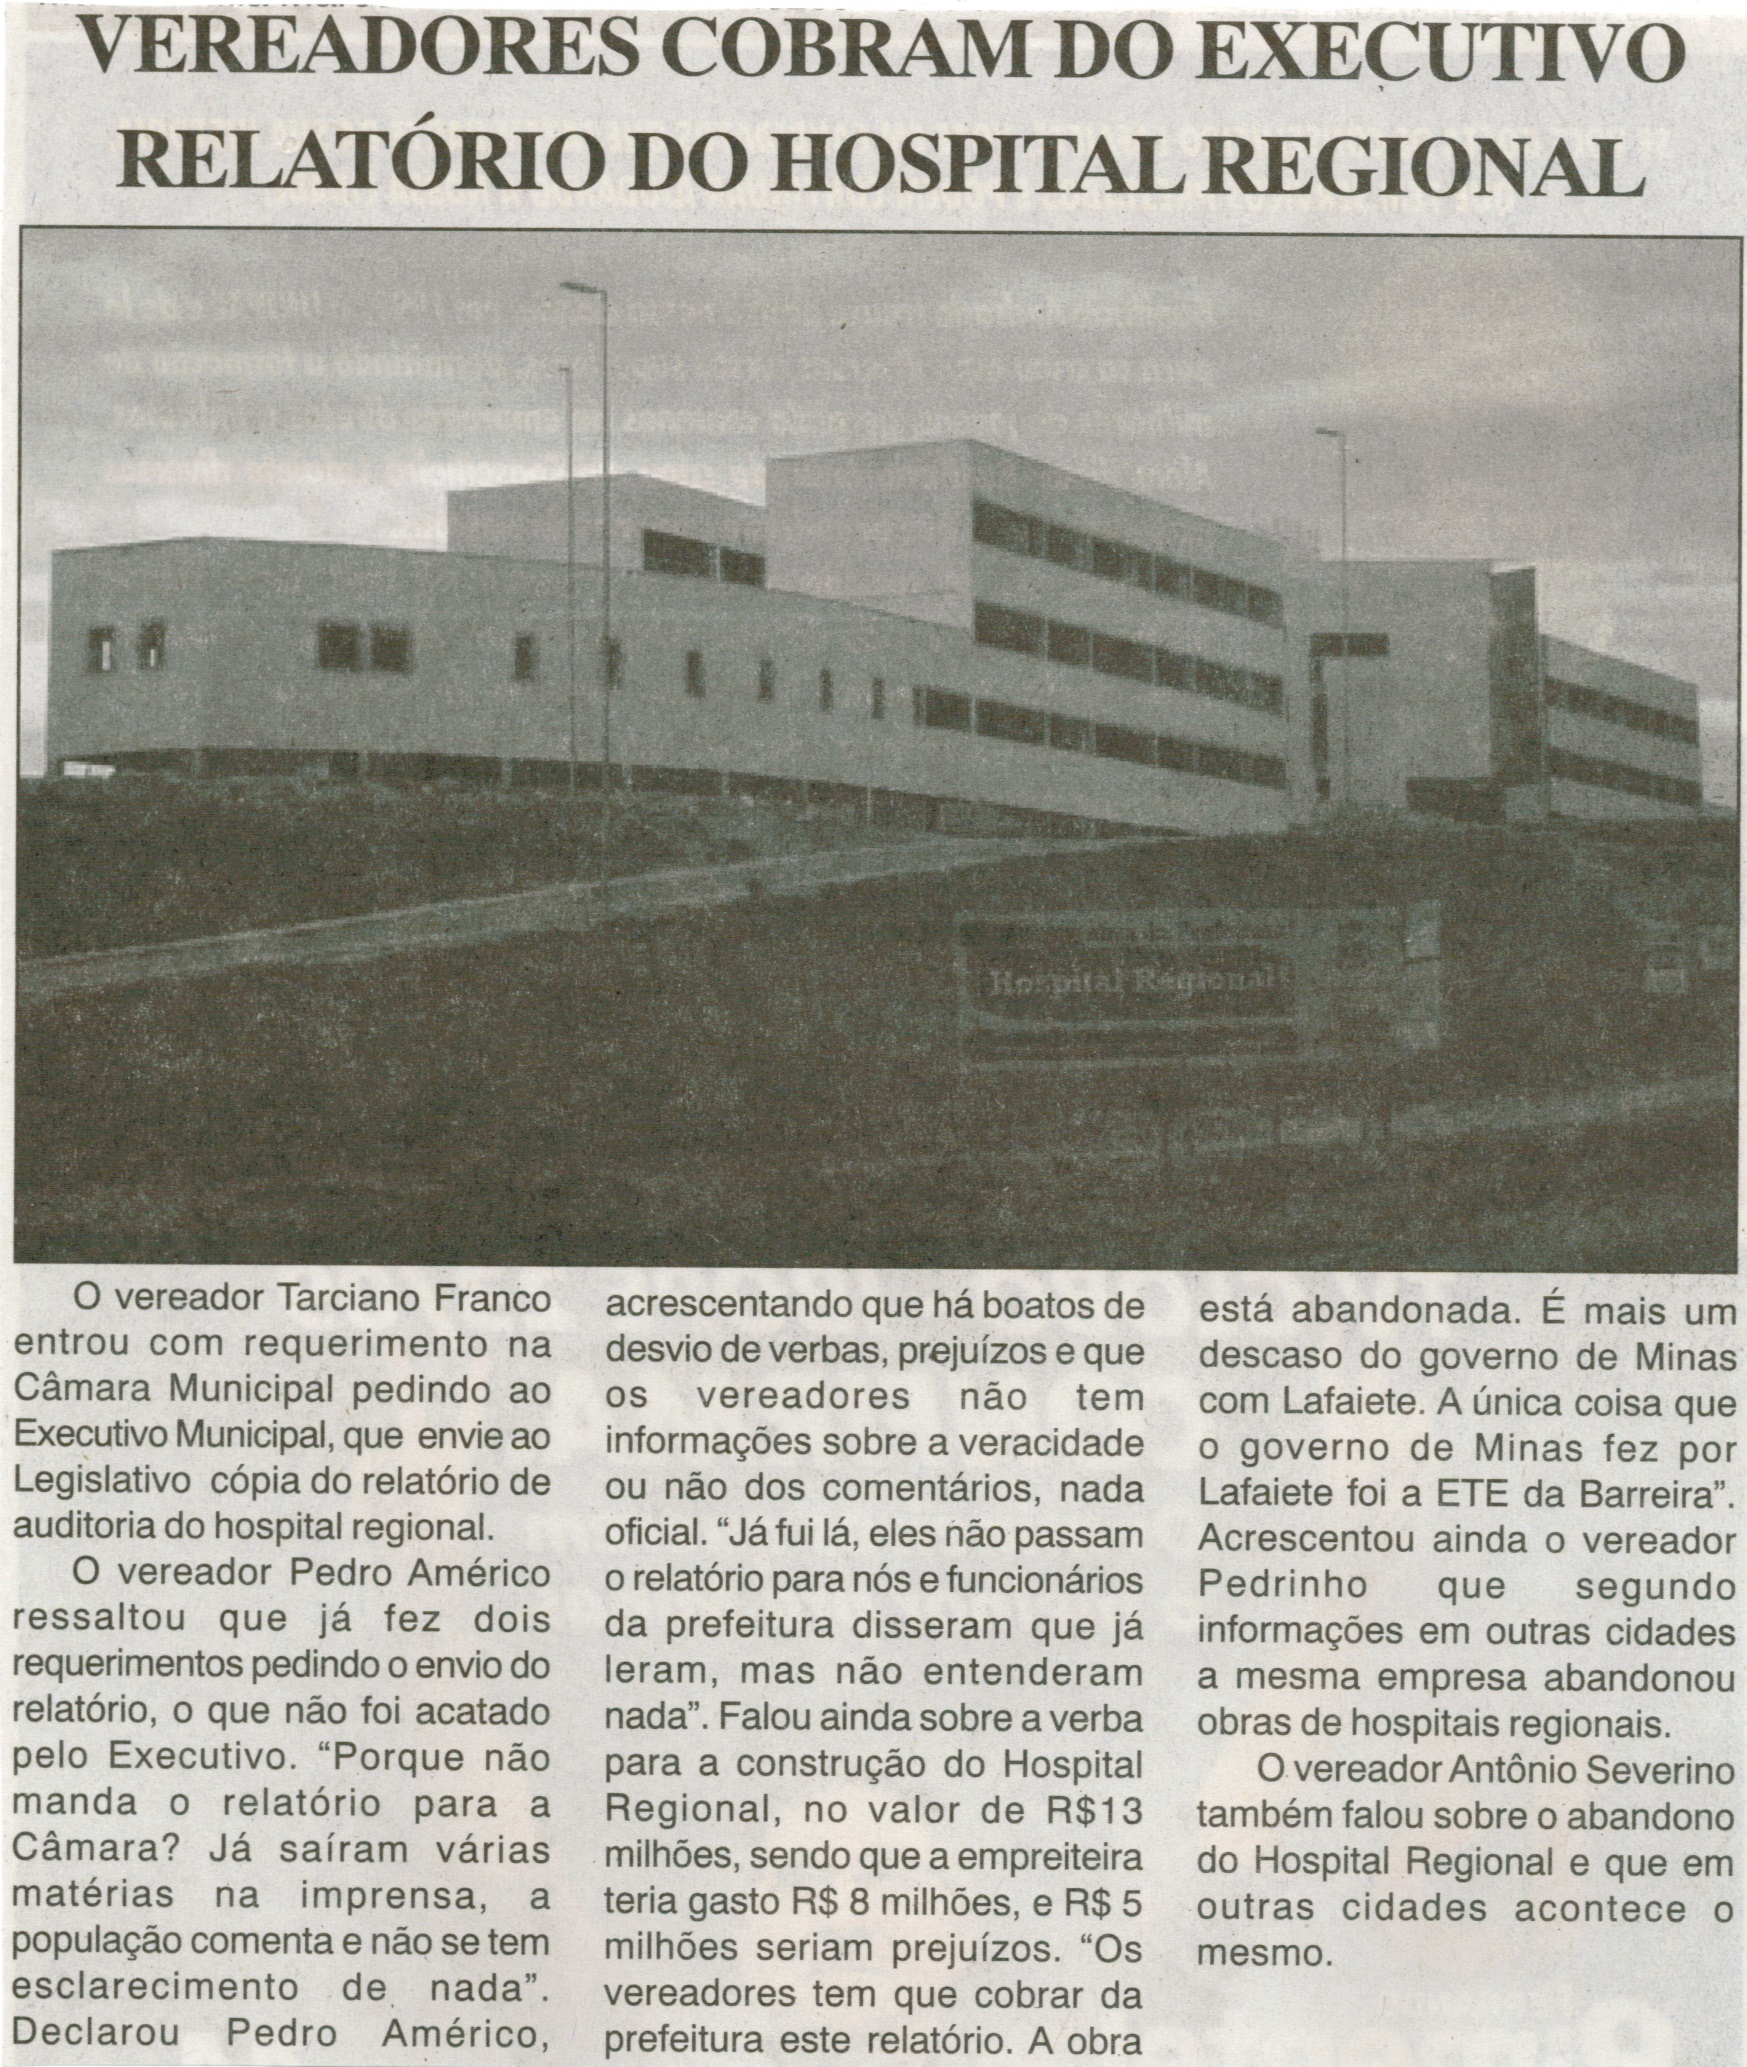 Vereadores cobram do executivo relatório do Hospital Regional. Jornal Correio da Cidade, Conselheiro Lafaiete, 17 out. 2014, p. 17.